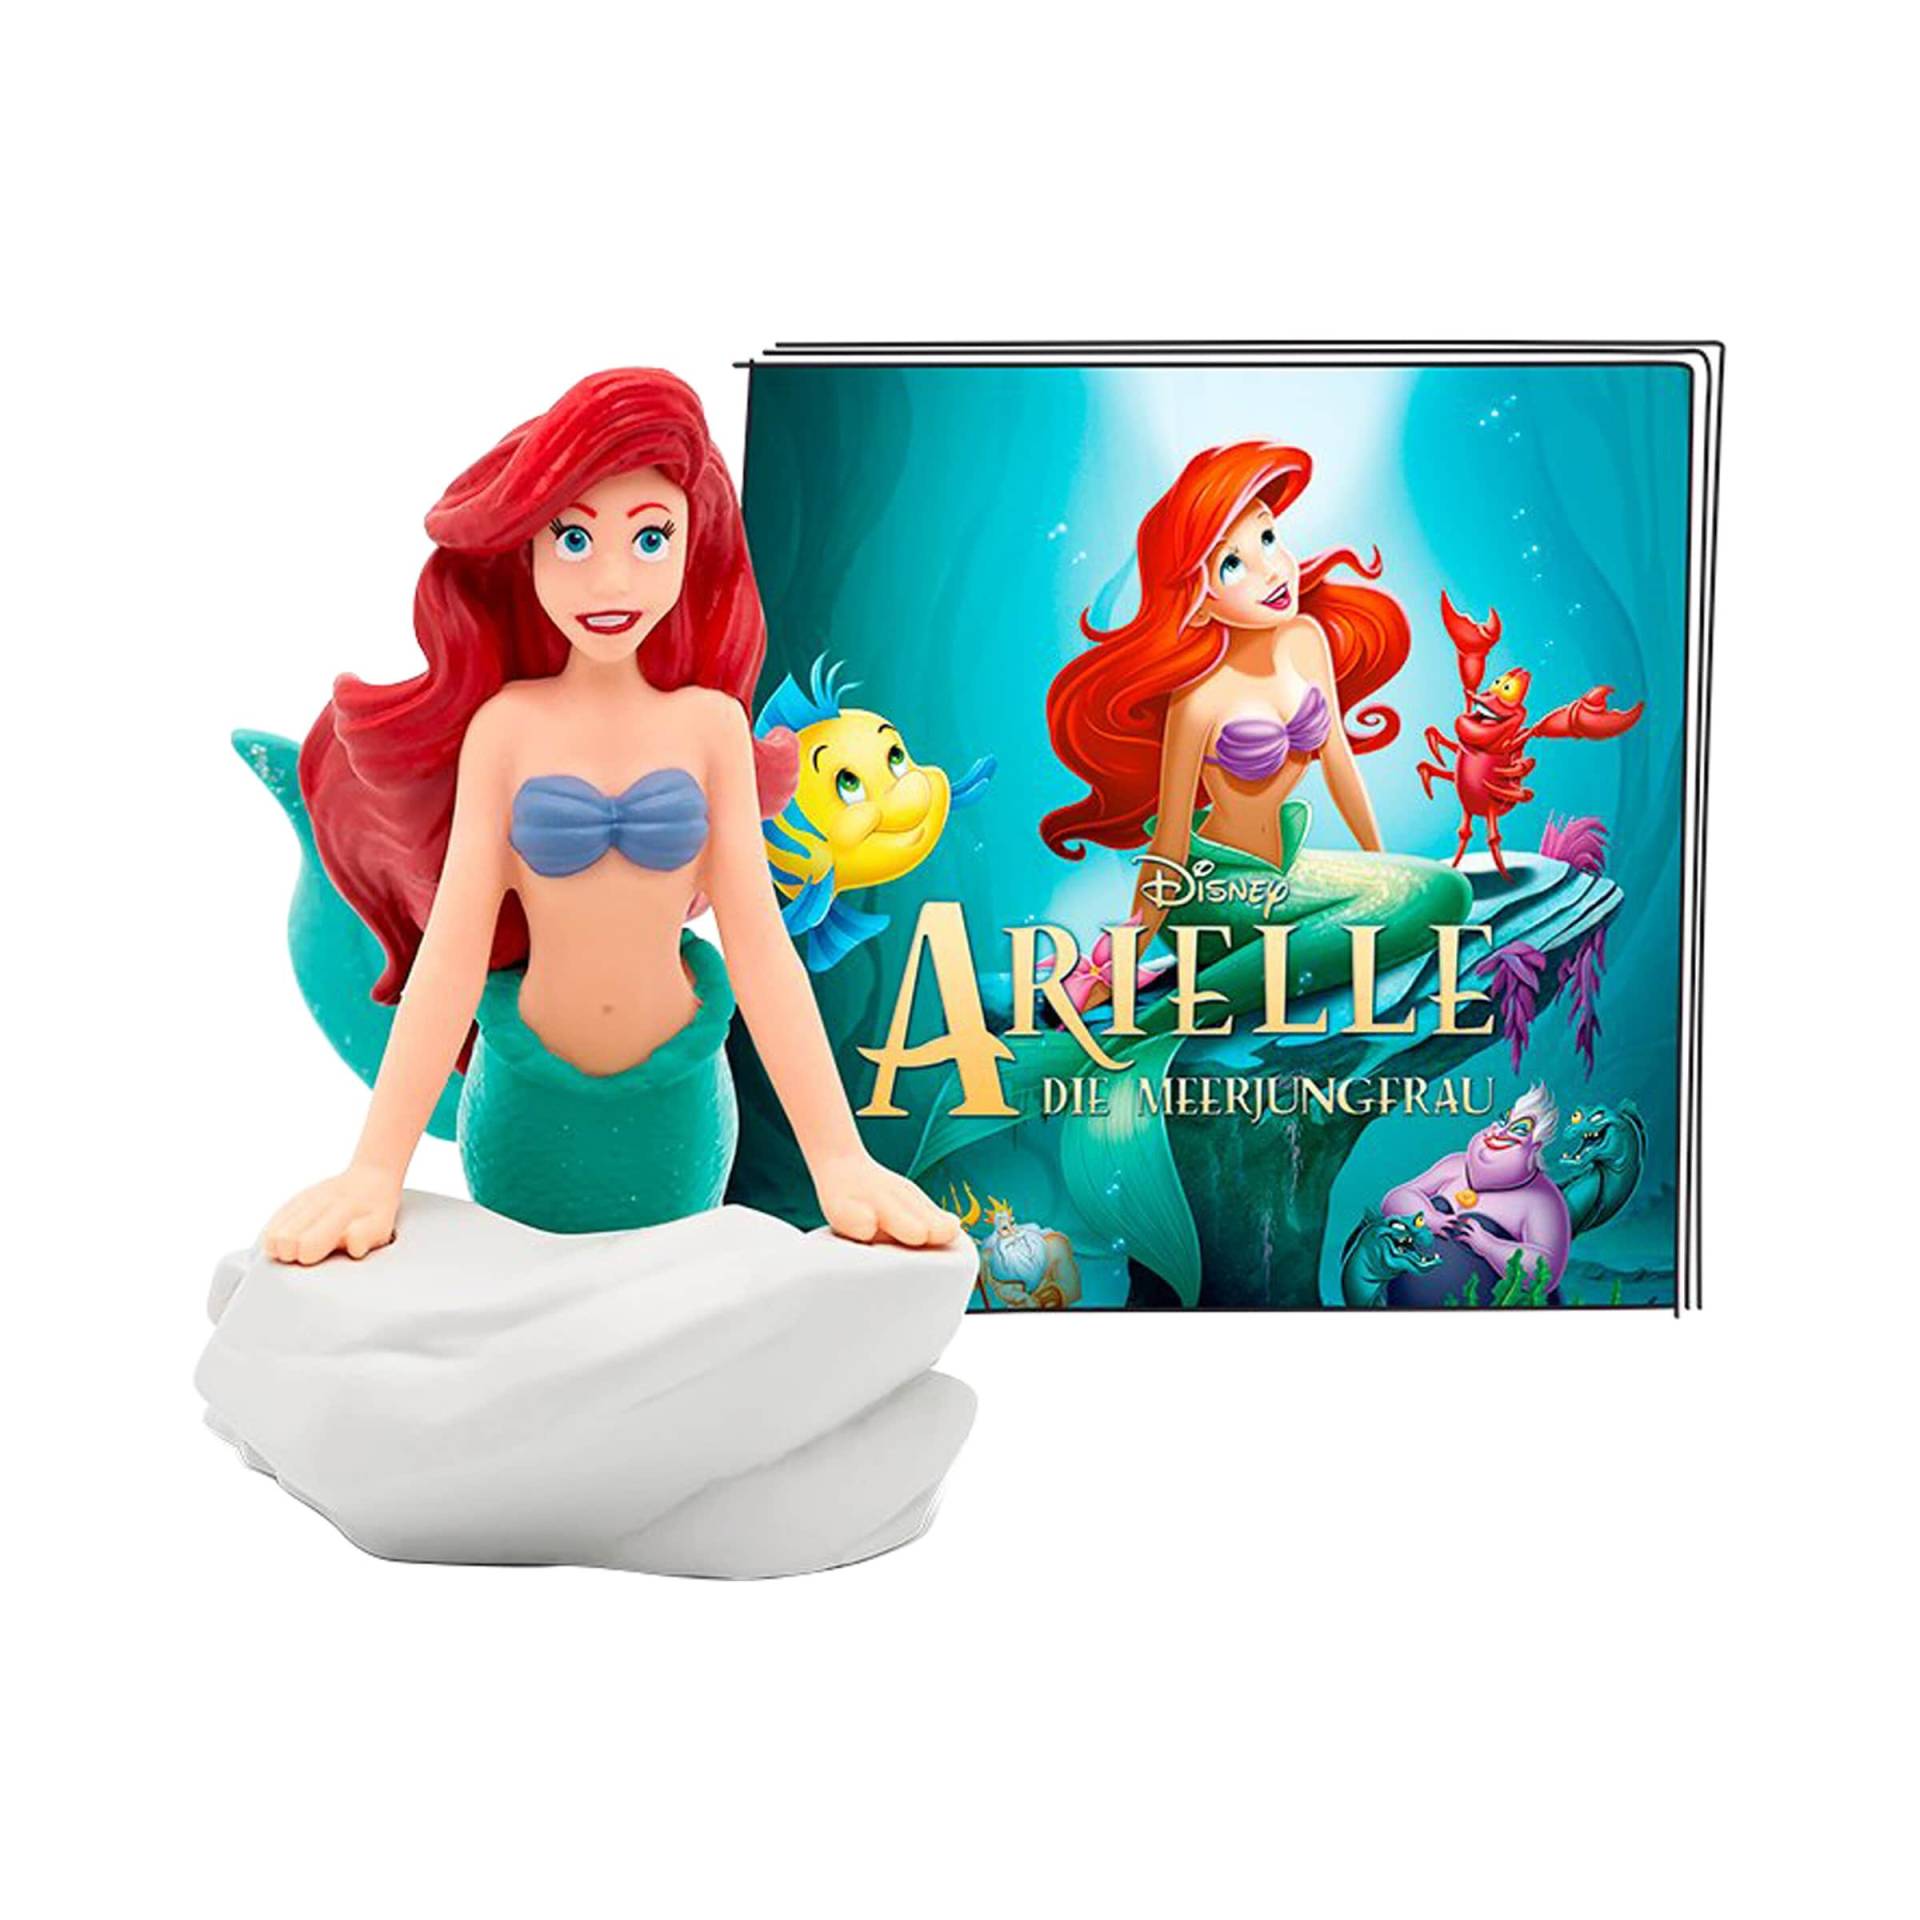 Tonies Tonie Hörfigur Disney - Arielle die Meerjungfrau von tonies